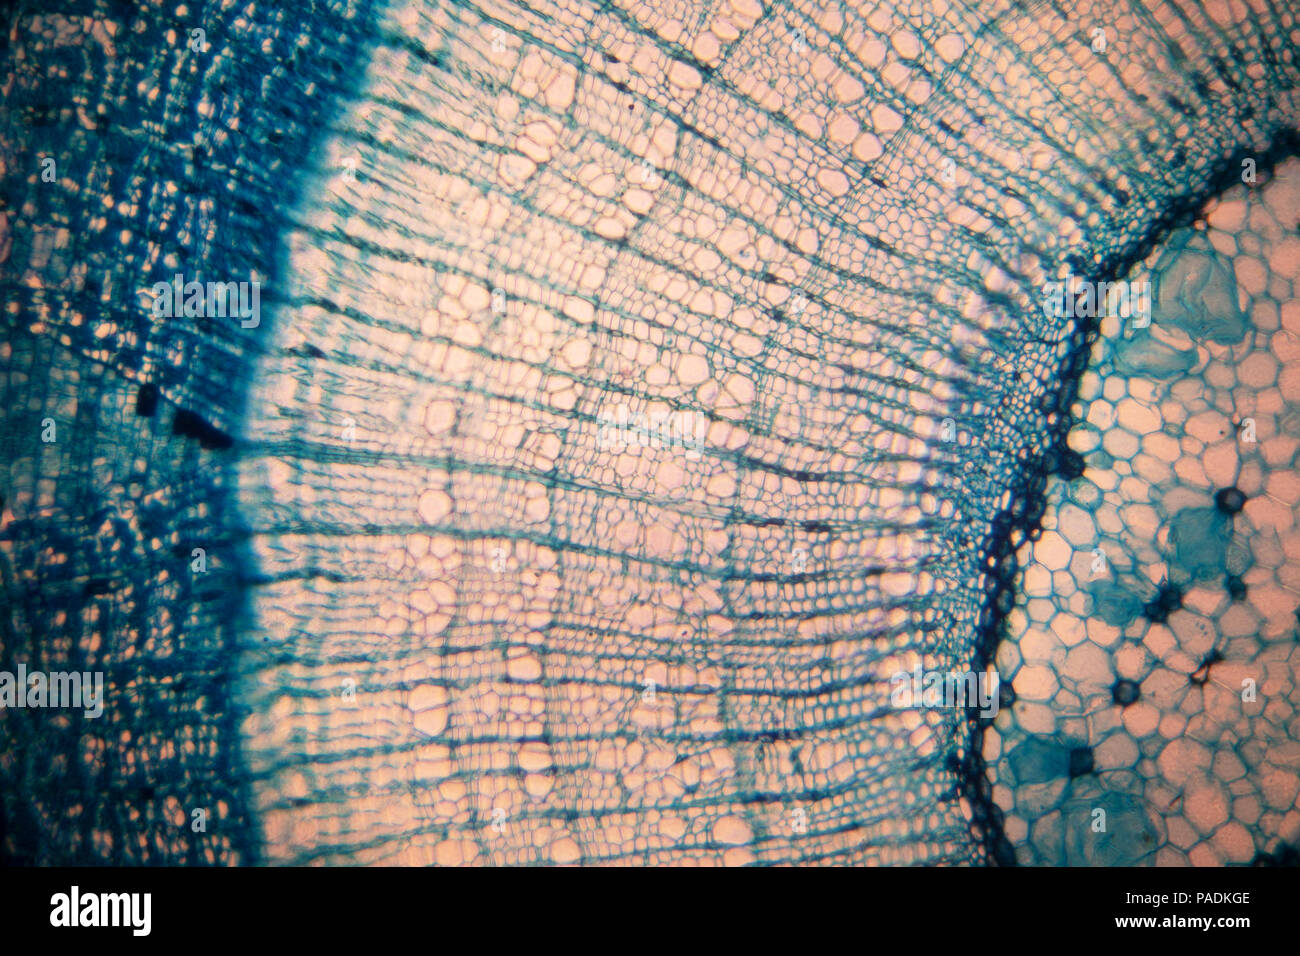 Cellula di un organismo vivente nel microscopio Foto Stock